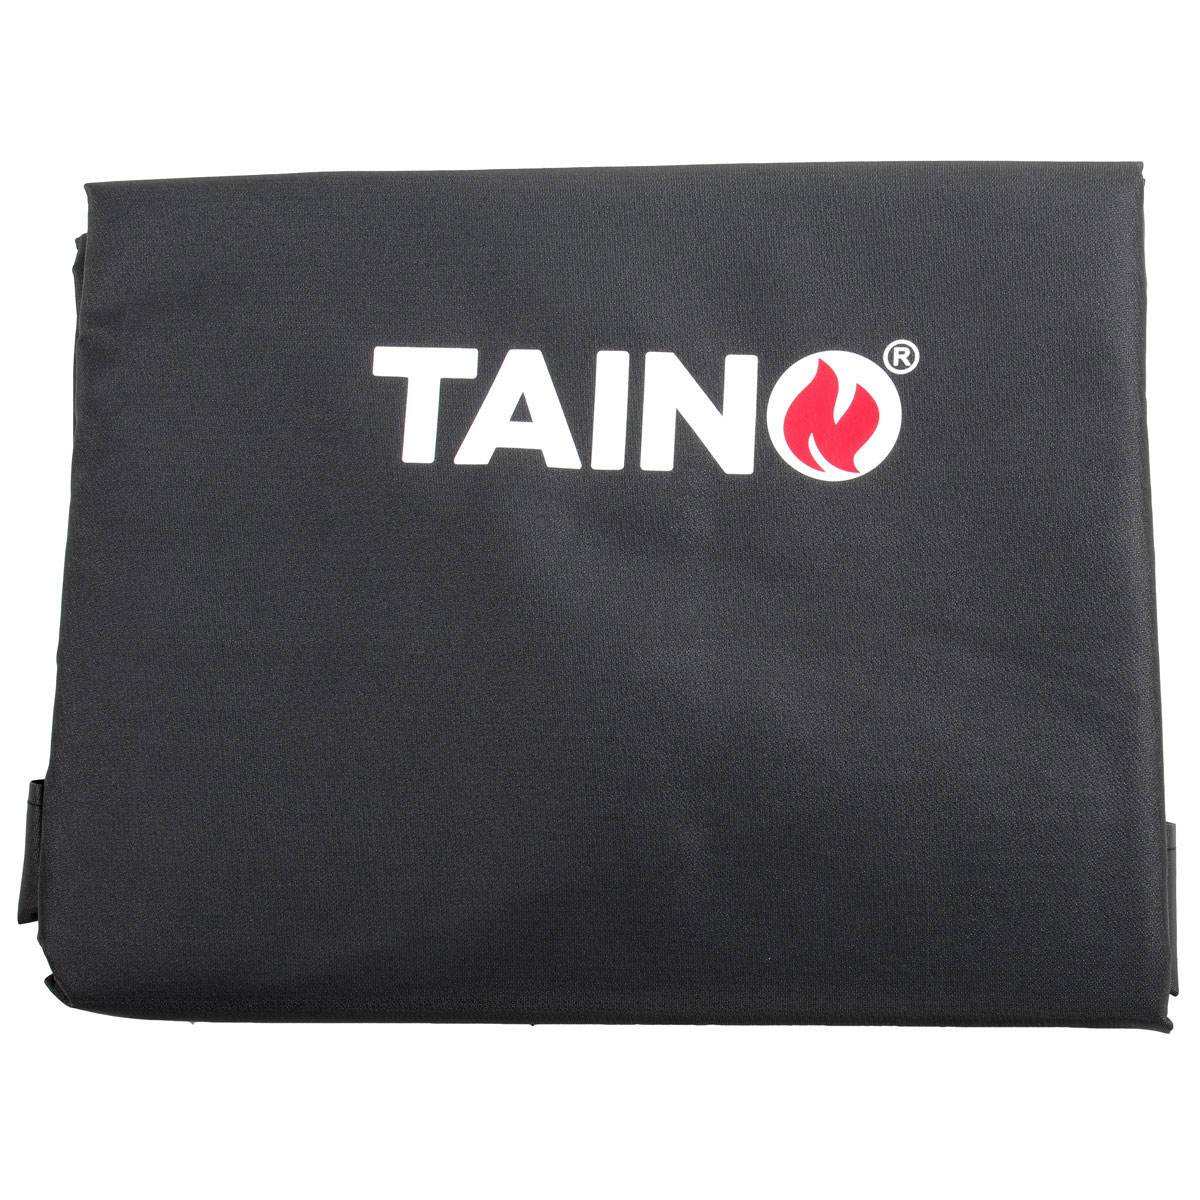 TAINO CHIEF Abdeckung Wetterschutz Regenschutz für Smoker universal Grill-Plane